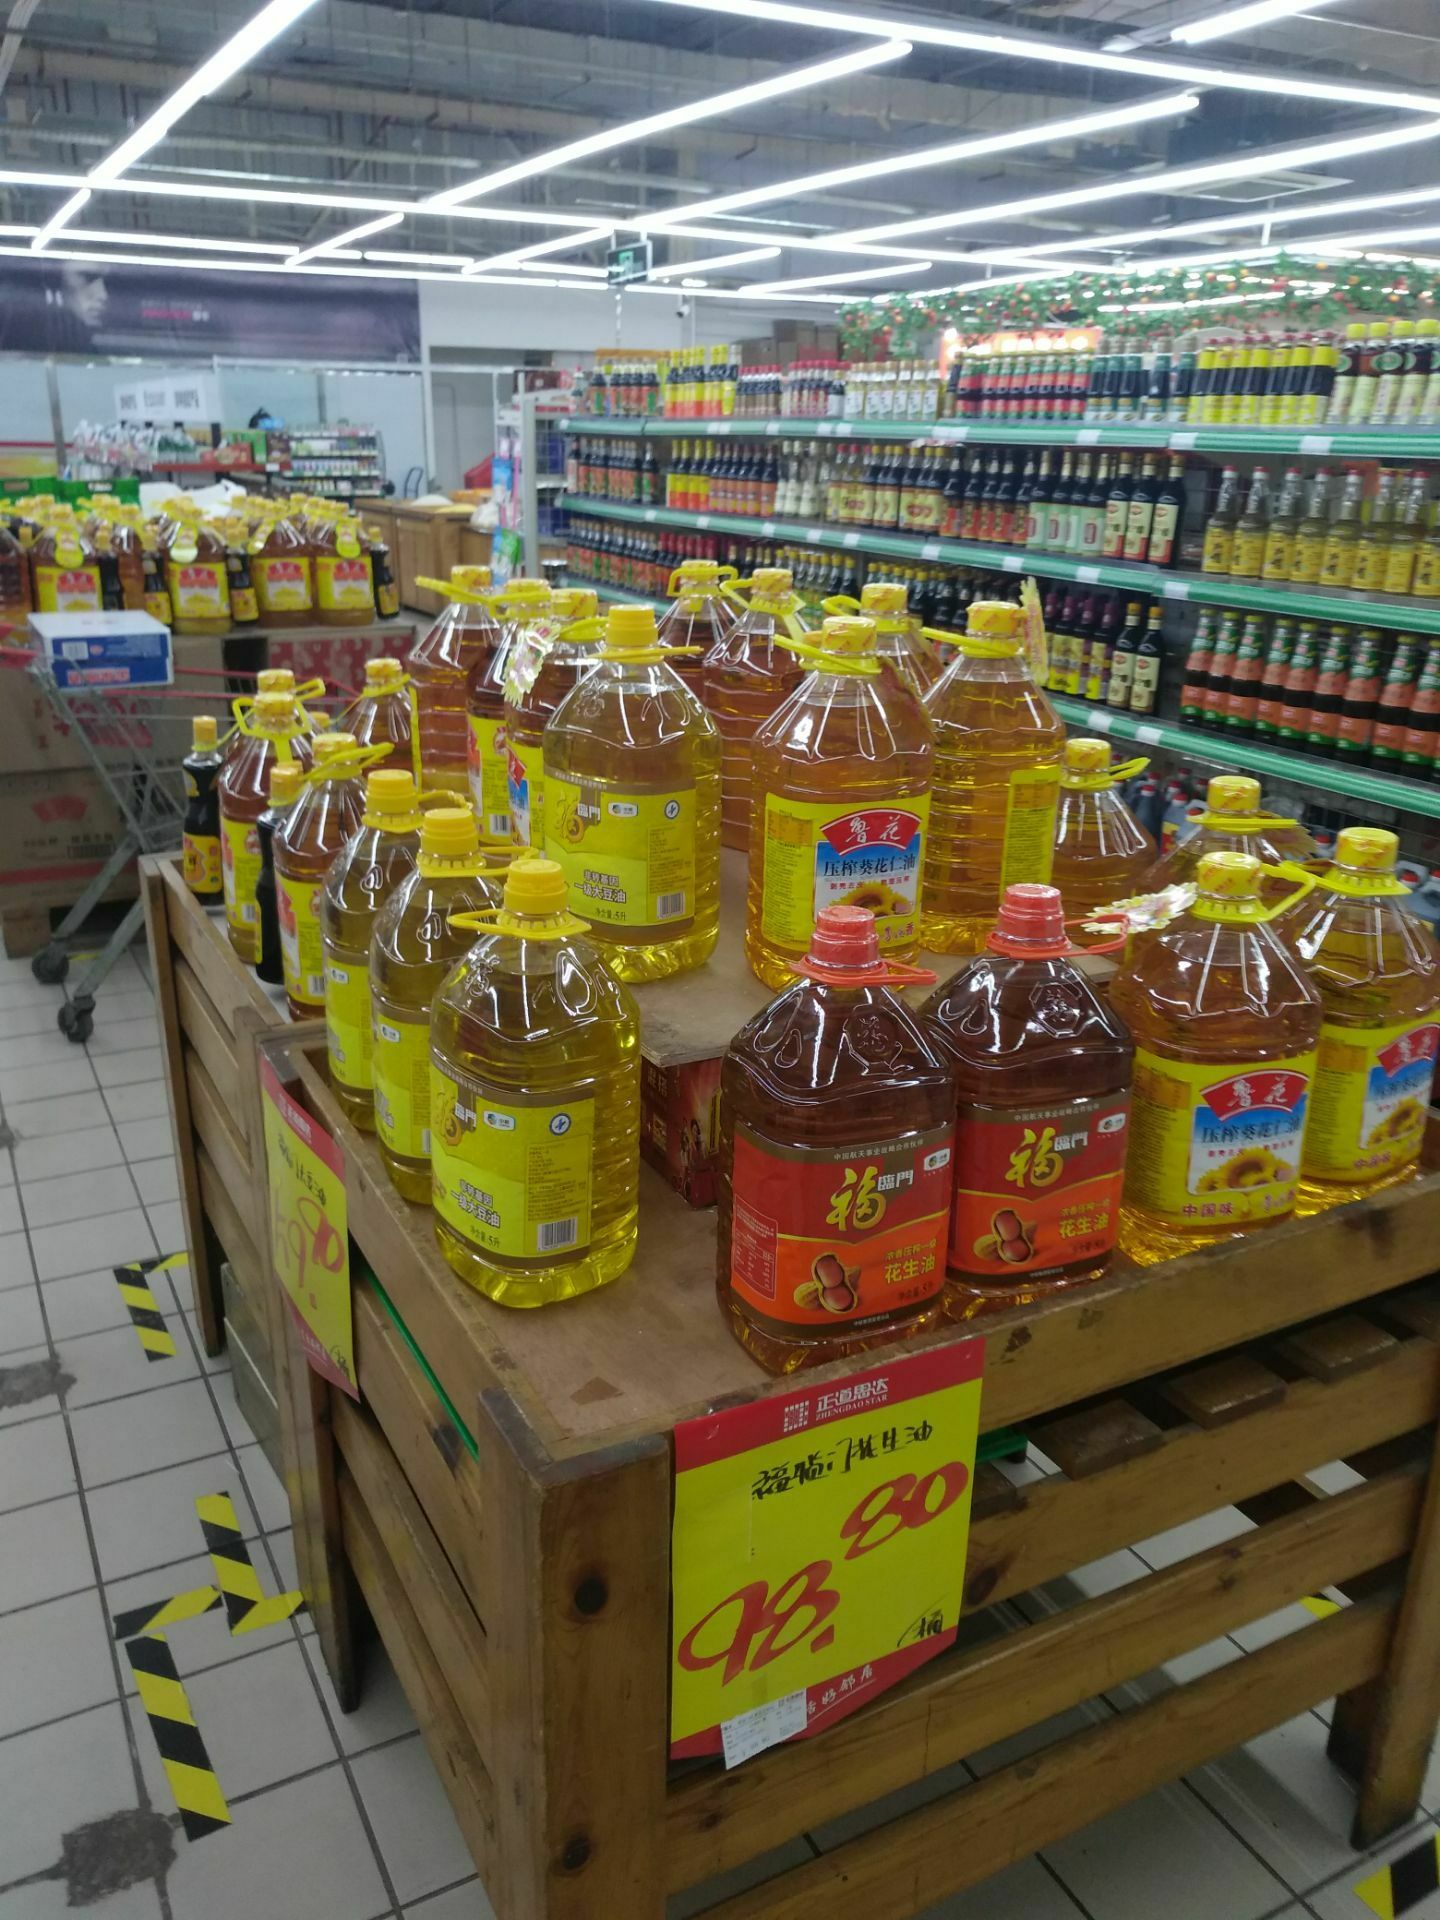 嵩县思达超市图片